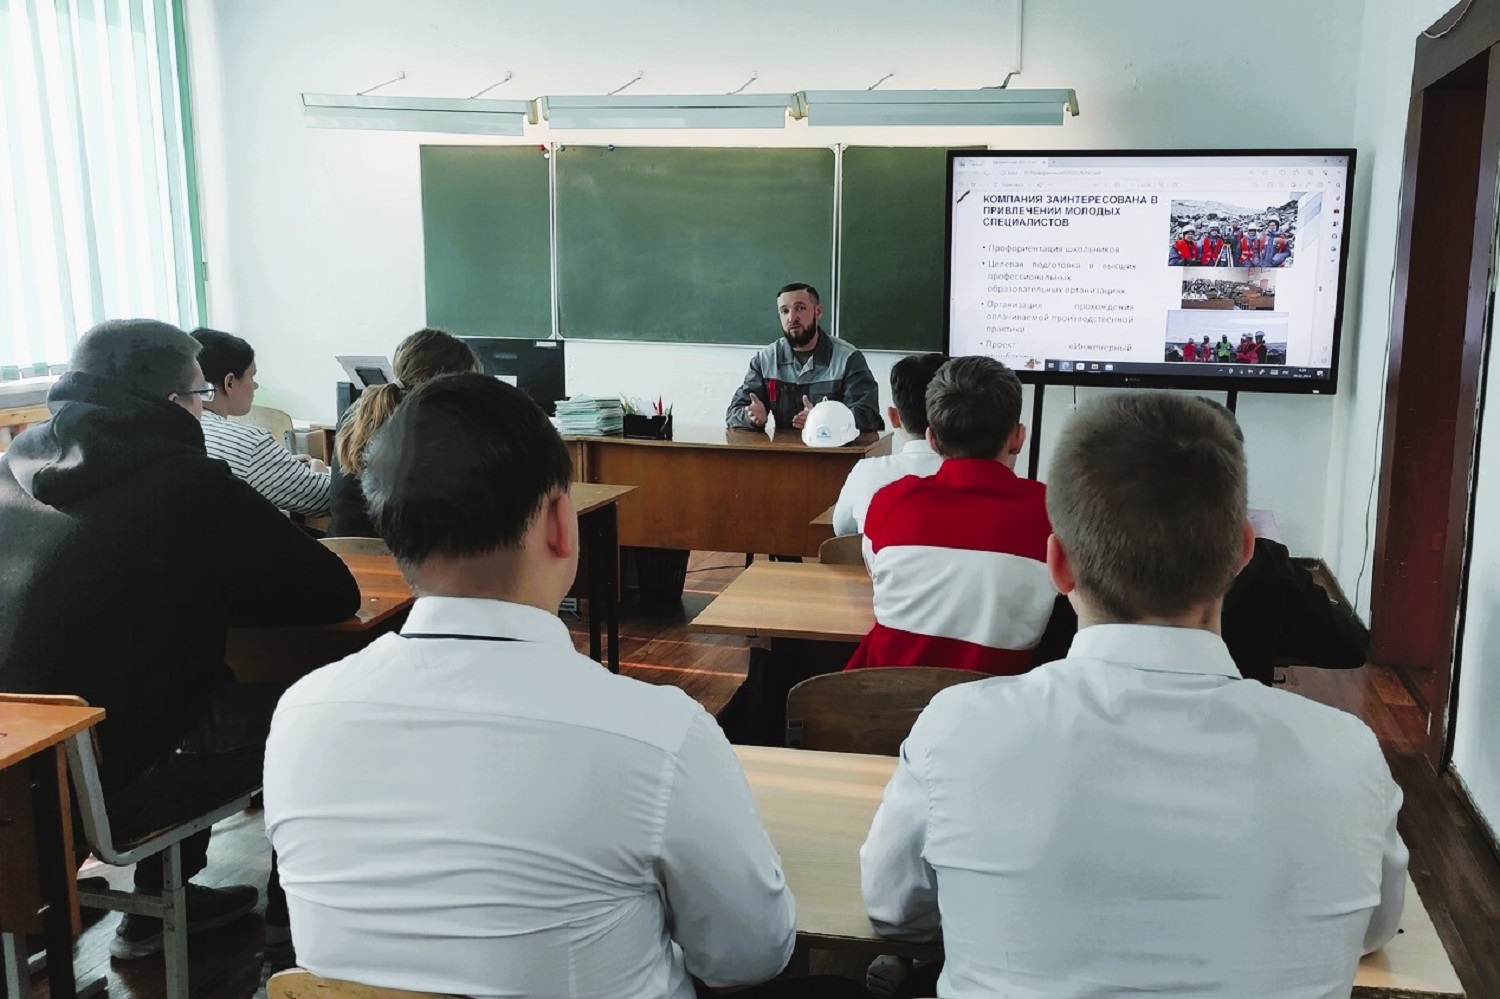 Сотрудник разреза Пермяковский рассказал школьникам о перспективах выбора горняцкой профессии. Стройсервис